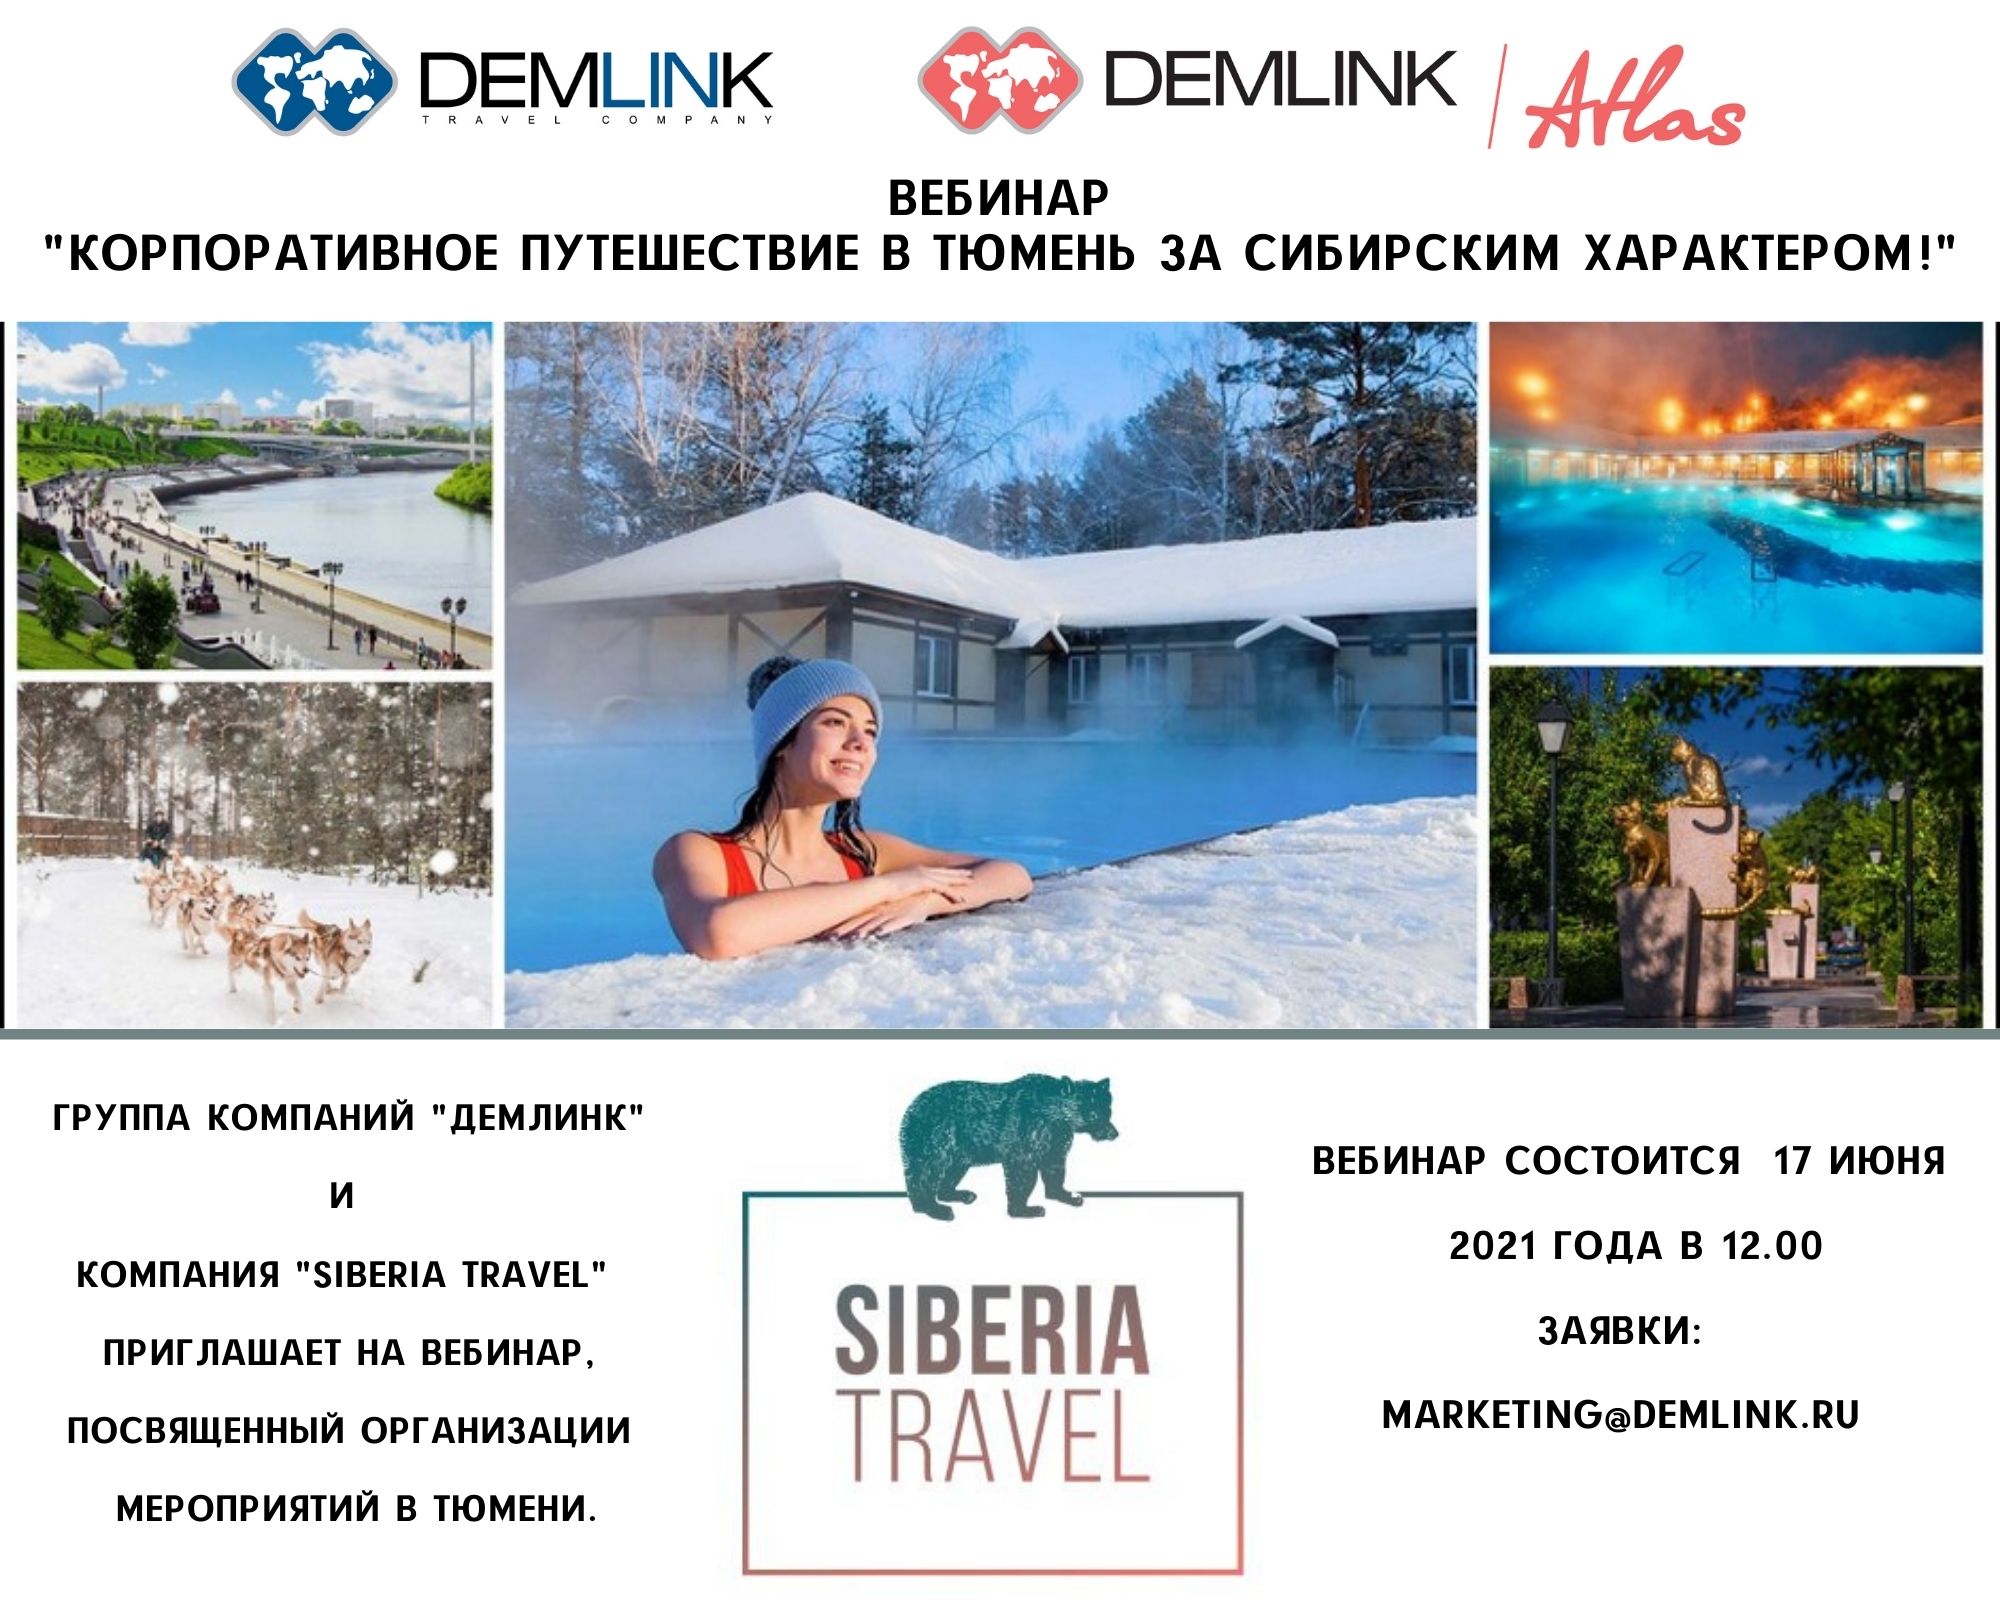 Demlink Club Вебинар 17_06_21 Корпоративное путешествие в Тюмень за сибирским характером.jpg